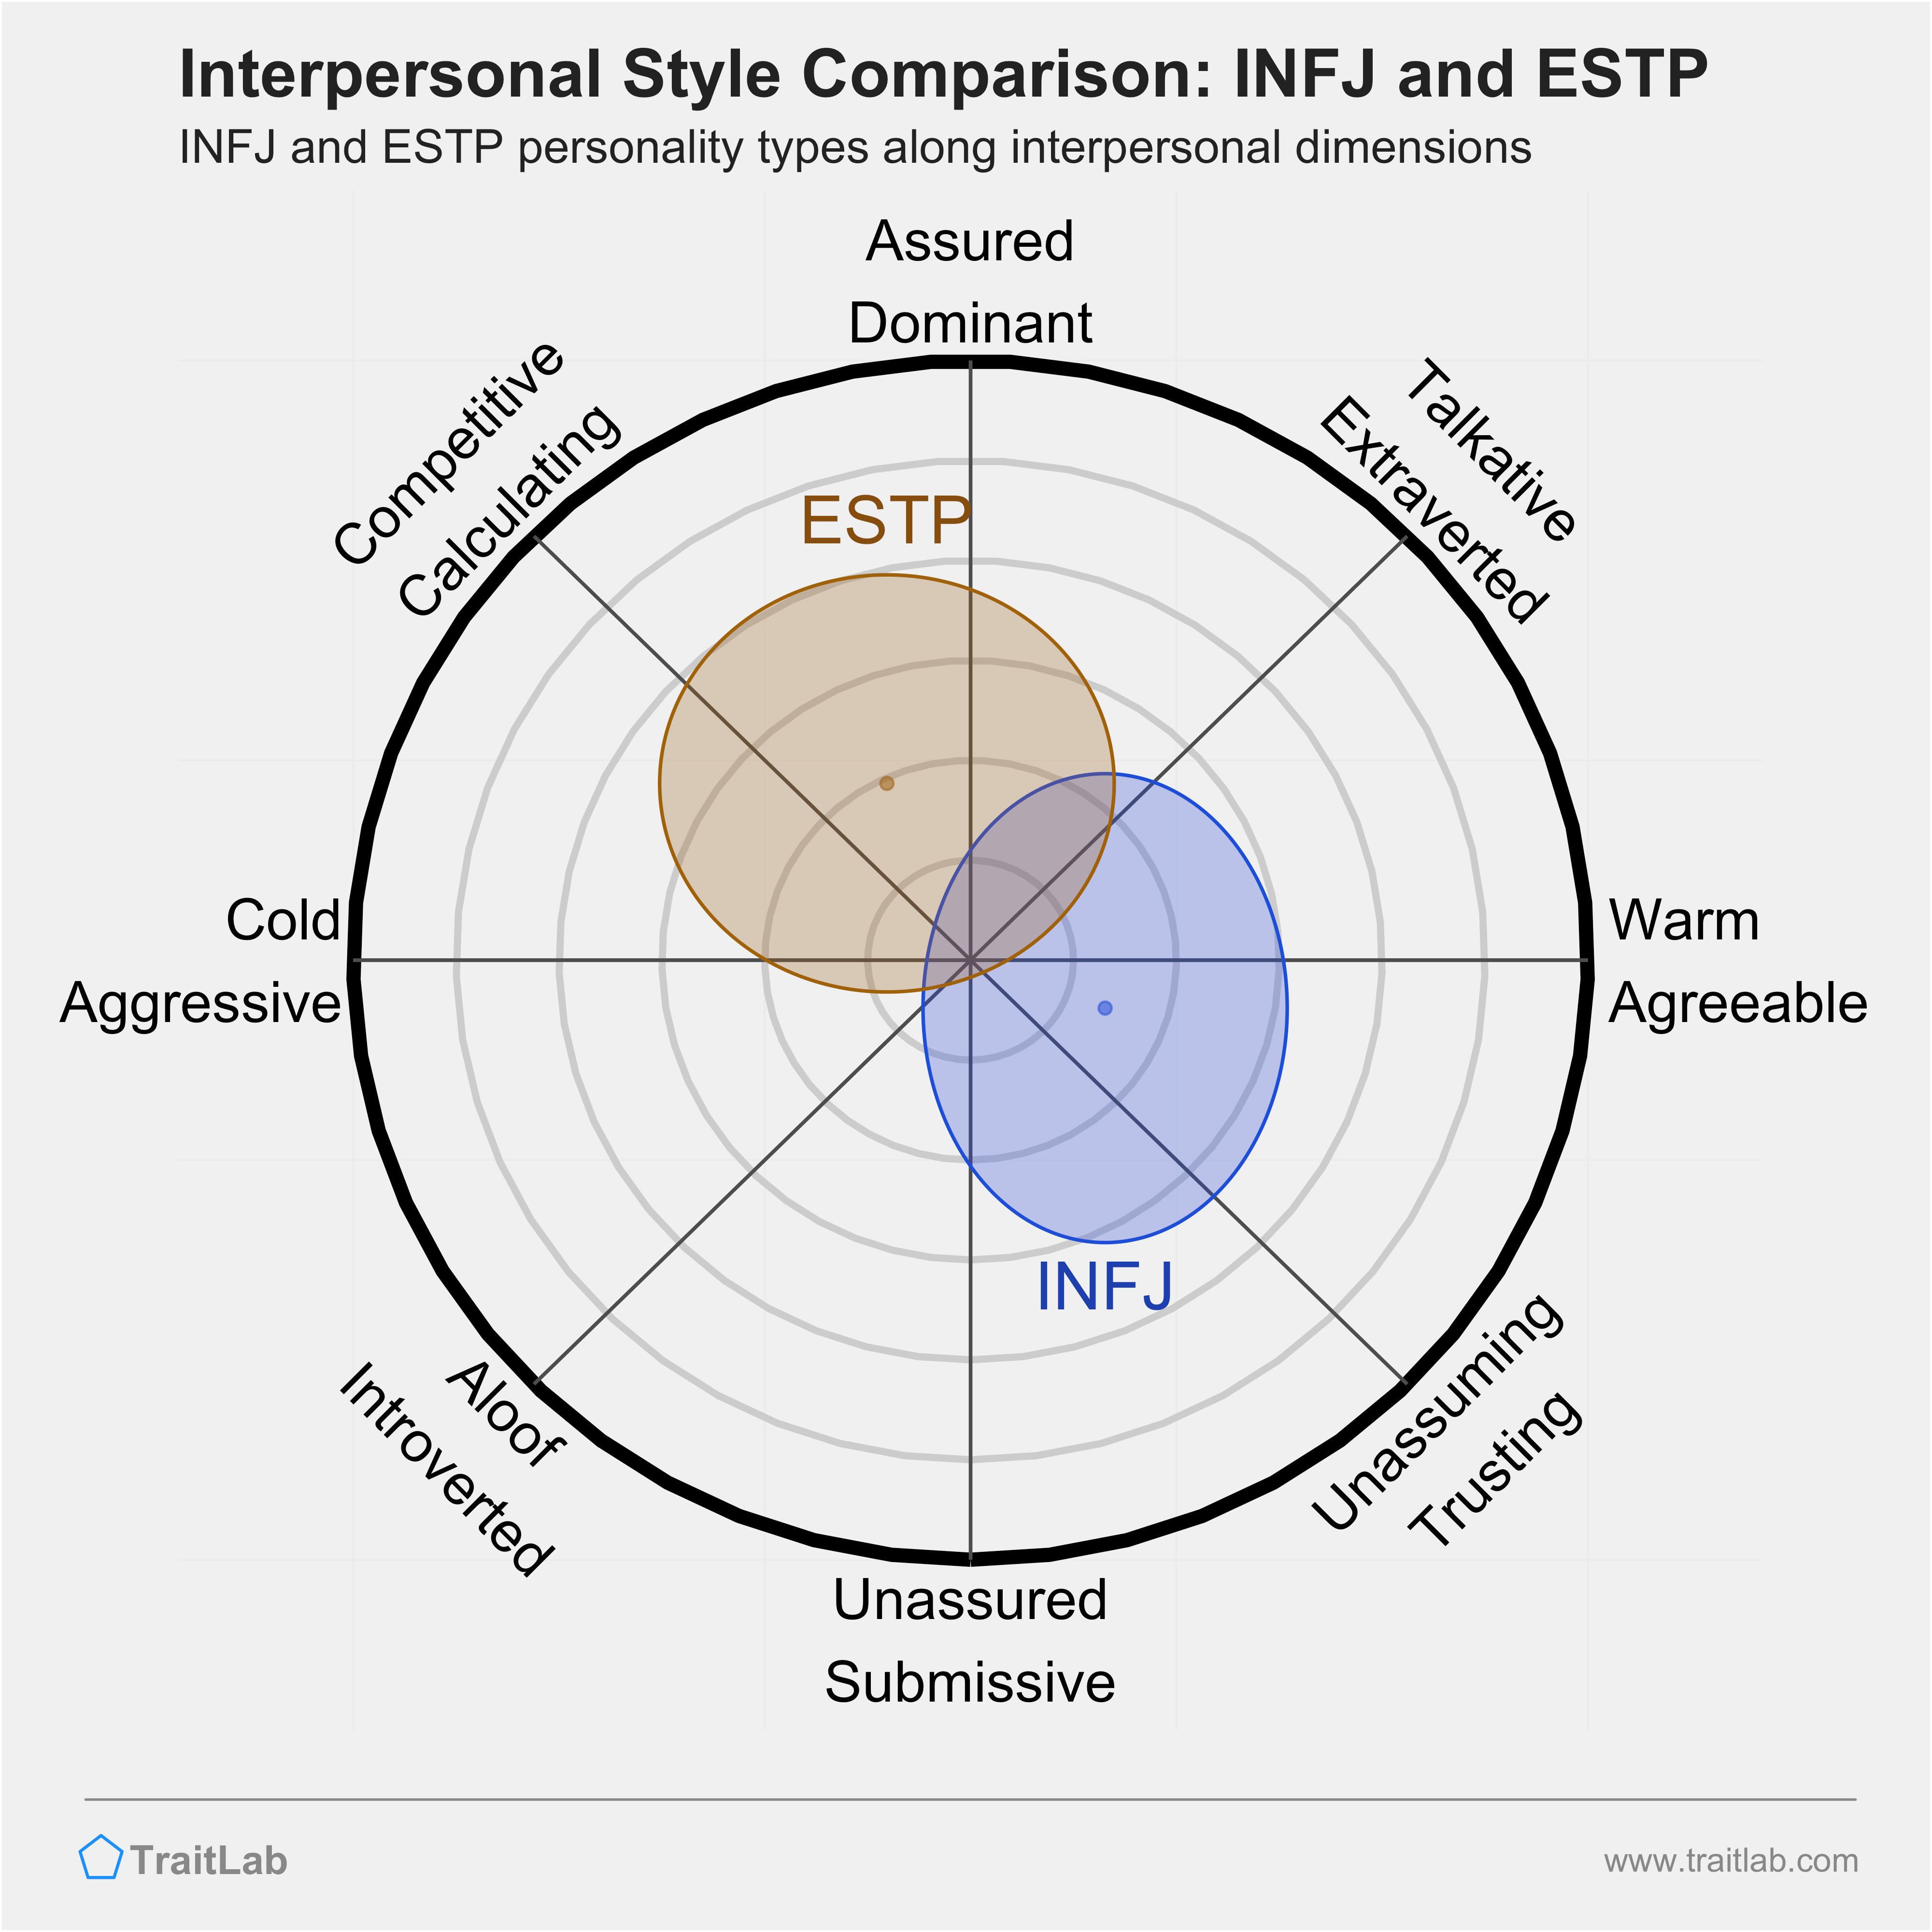 INFJ and ESTP comparison across interpersonal dimensions